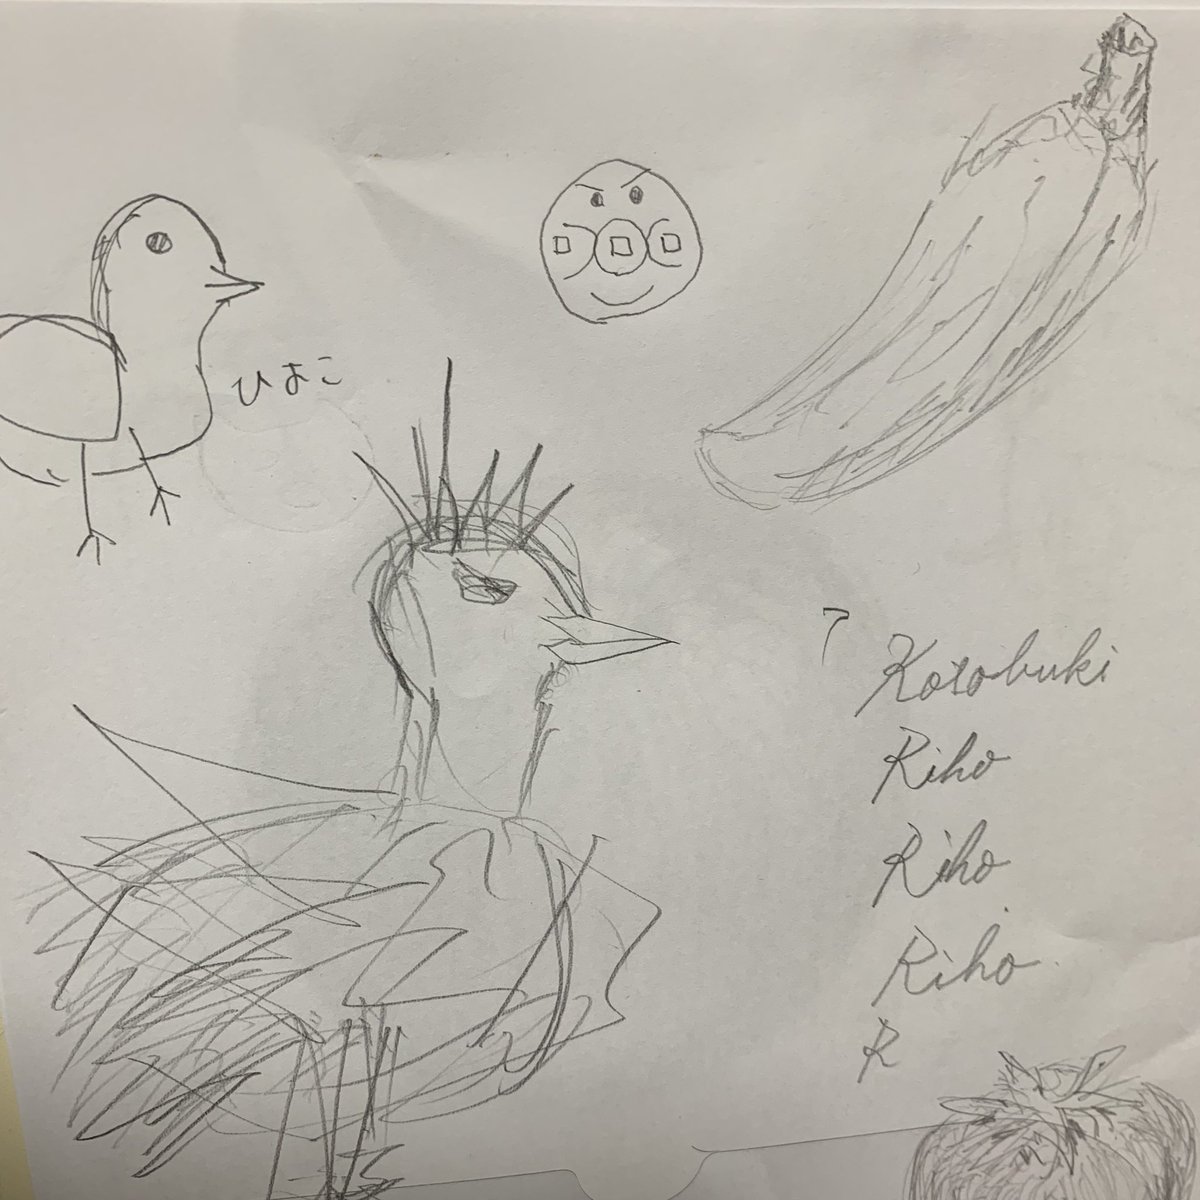 夫君は、絵があまり上手でないと思ってたけど
創造できないだけで
写真見て描くのは、上手だと気付いた。うまい…。

1枚目は、写真見て描いたグリズリー。
2枚目は、何も見ずに描いた鶏とひよことバナナ。 